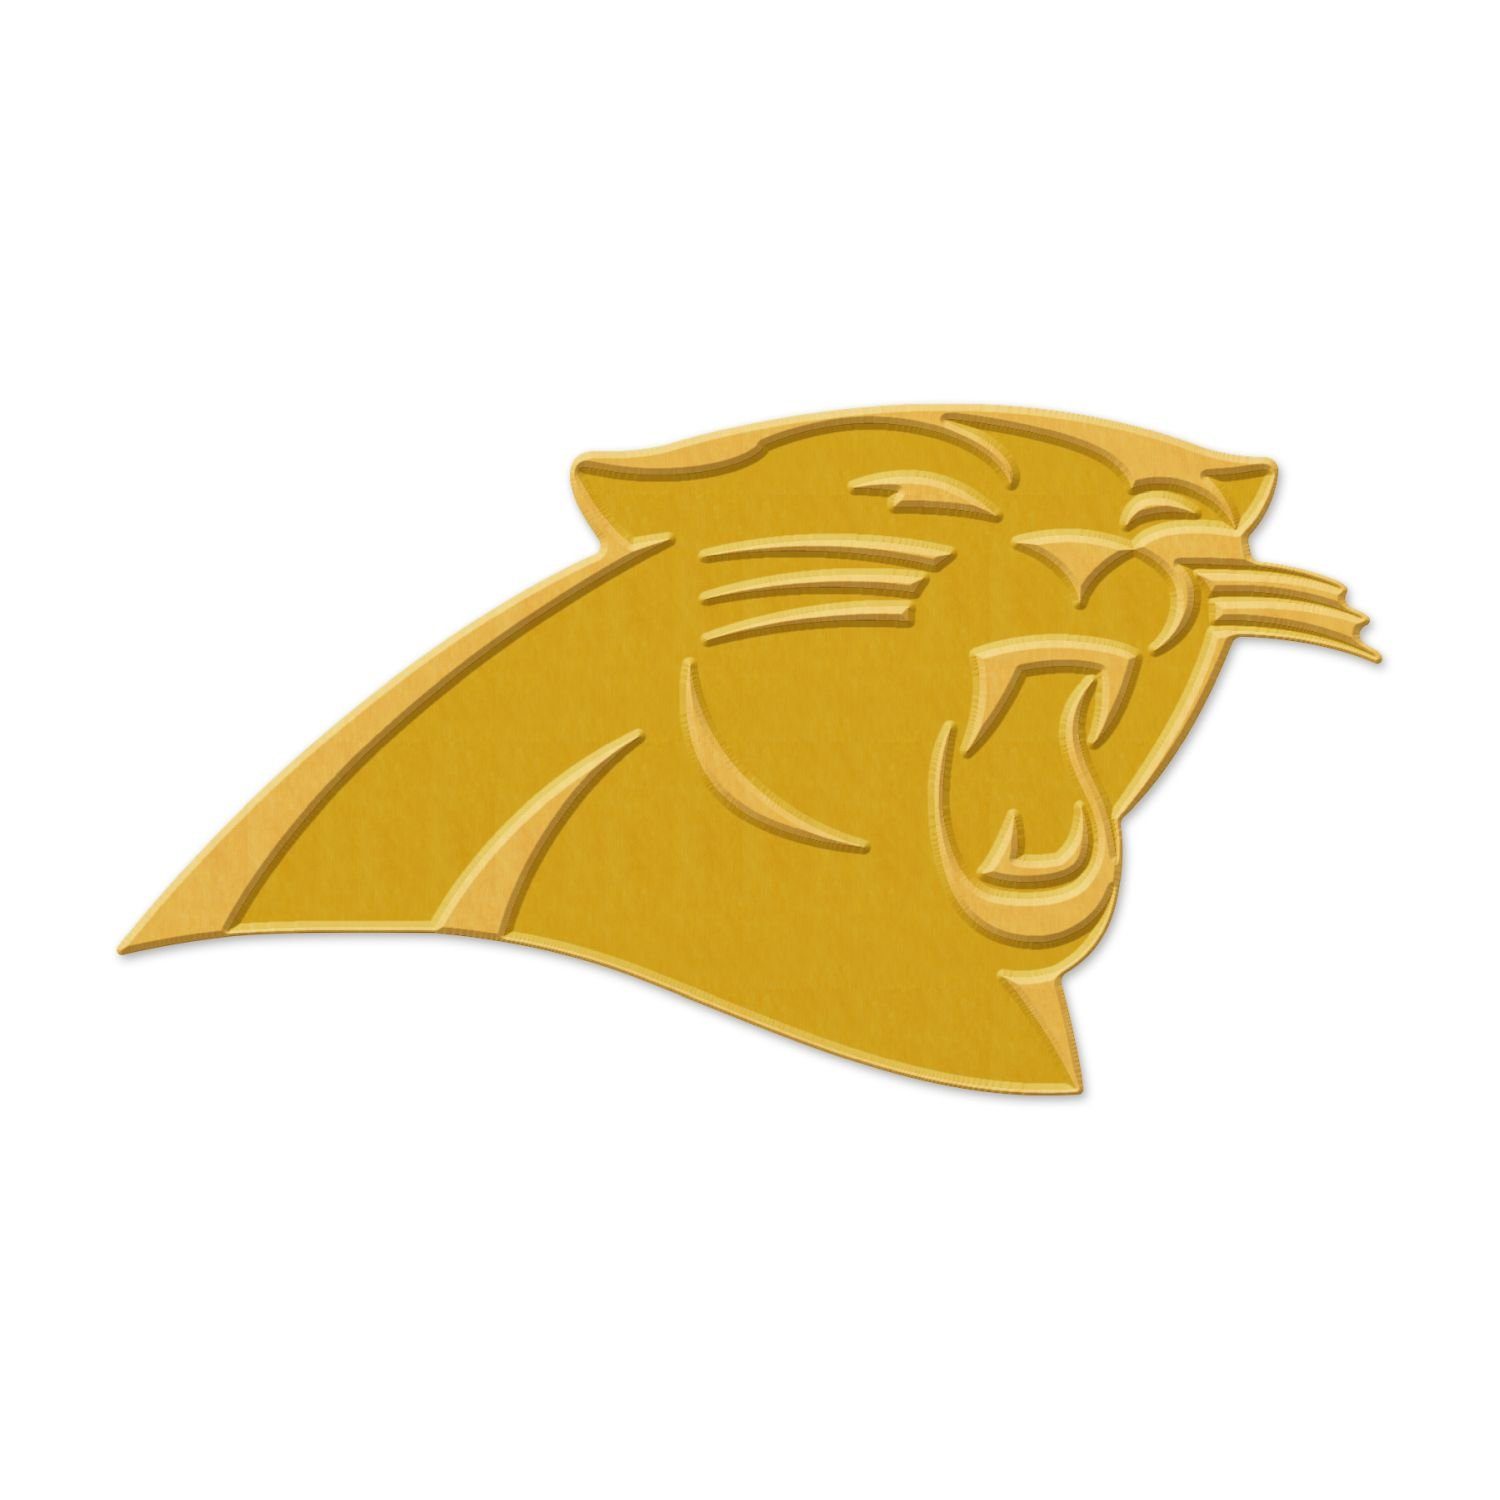 WinCraft Pins Universal Schmuck Caps PIN GOLD NFL Teams Carolina Panthers